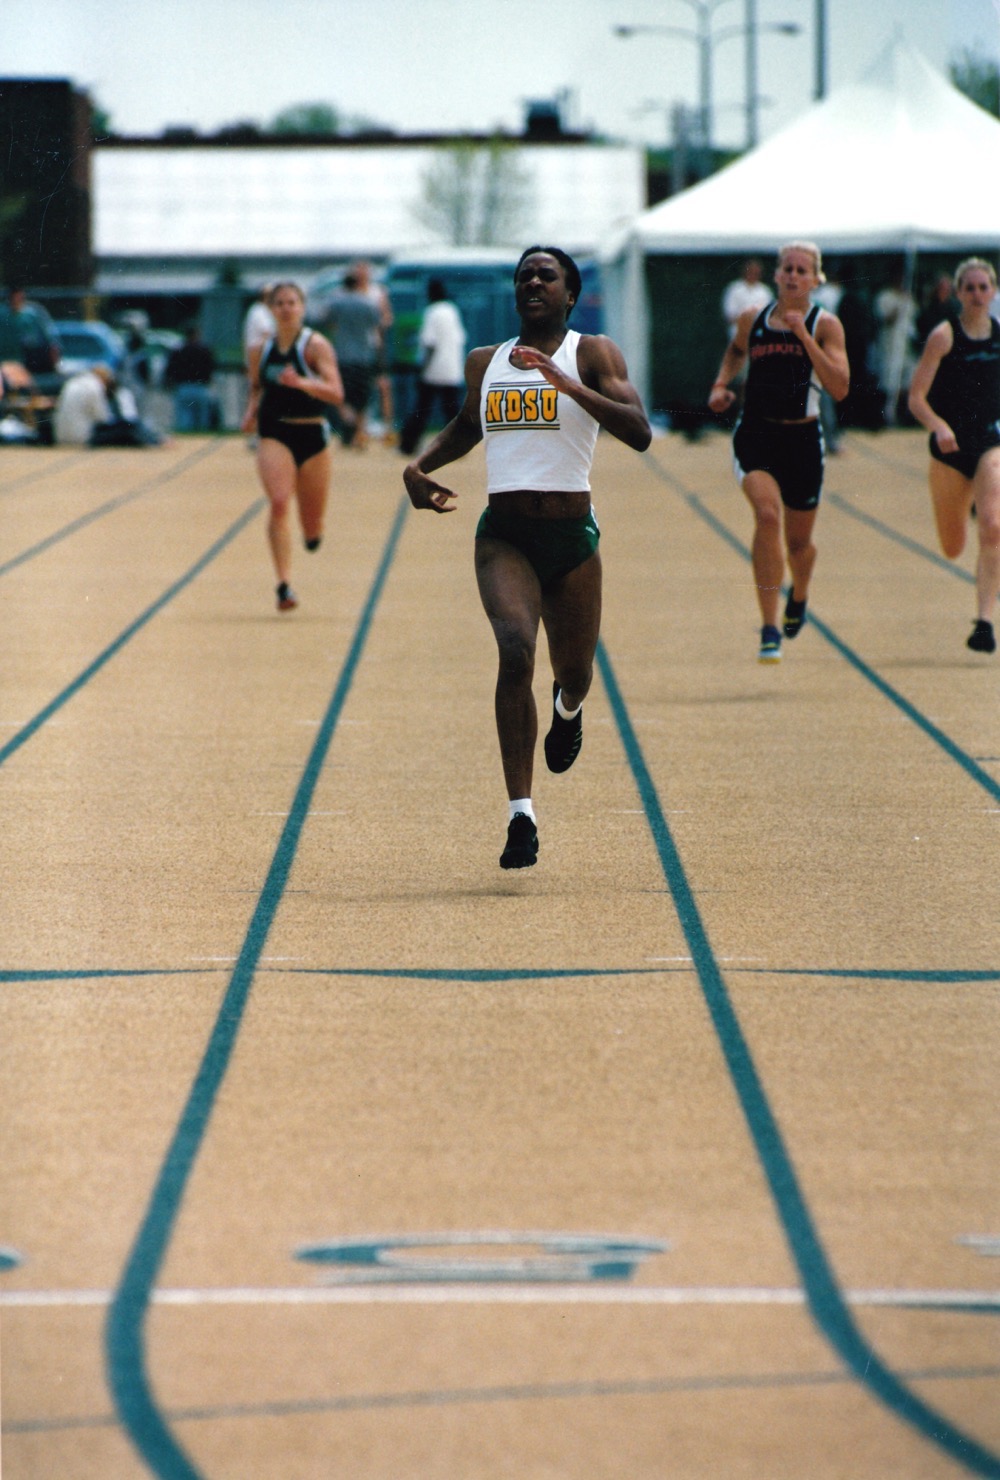 1996 Olympics in Atlanta Tamara Brudy